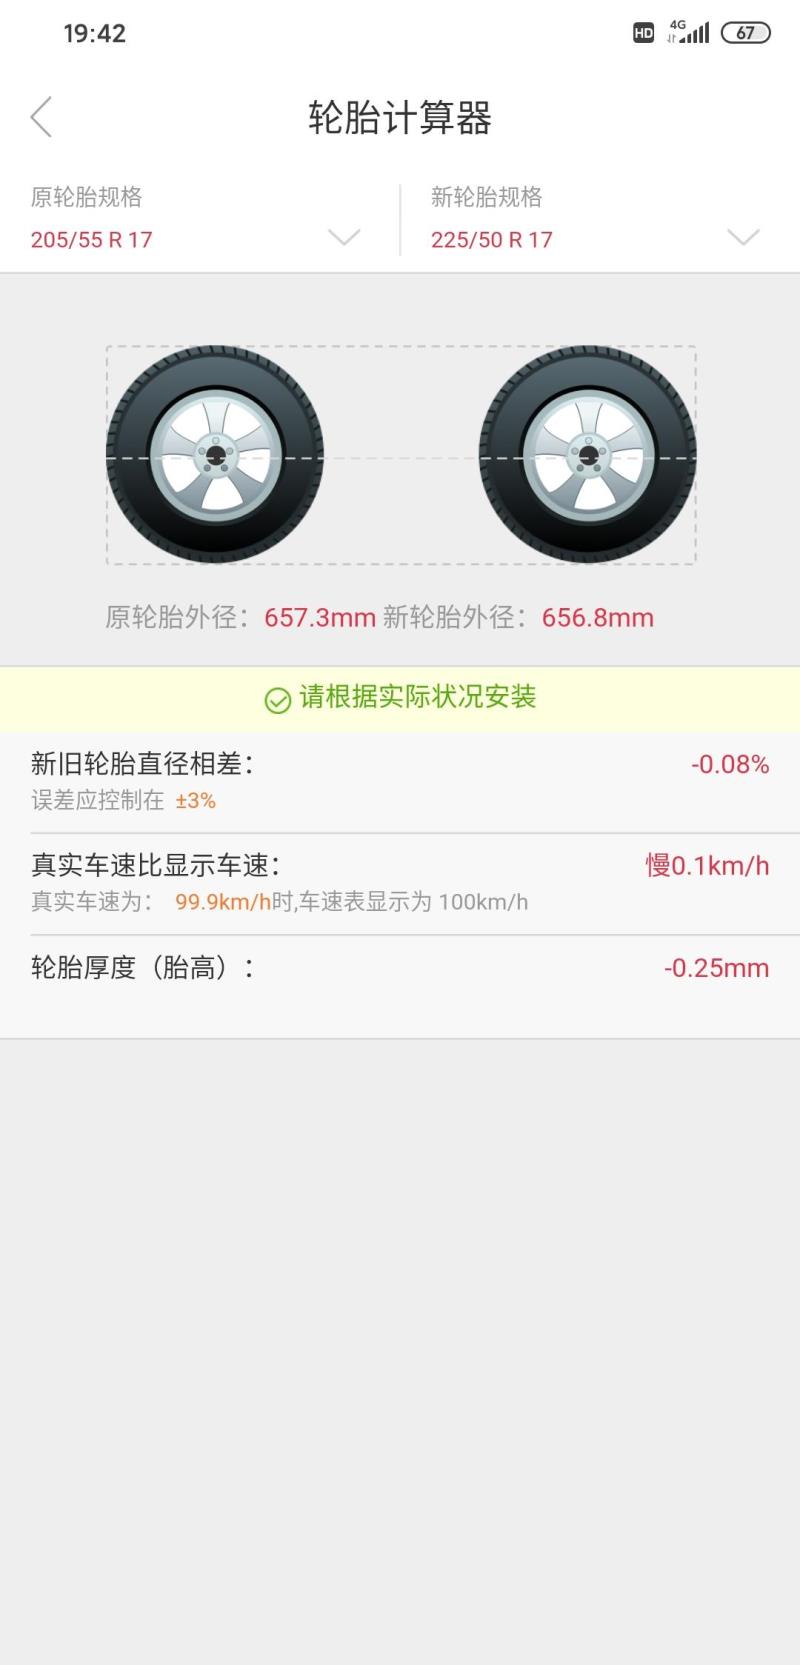 劲客，原车轮胎规格205/55R/17，能否换成宽点的轮胎?225/50R/17这样的规格会不会有什么问题?